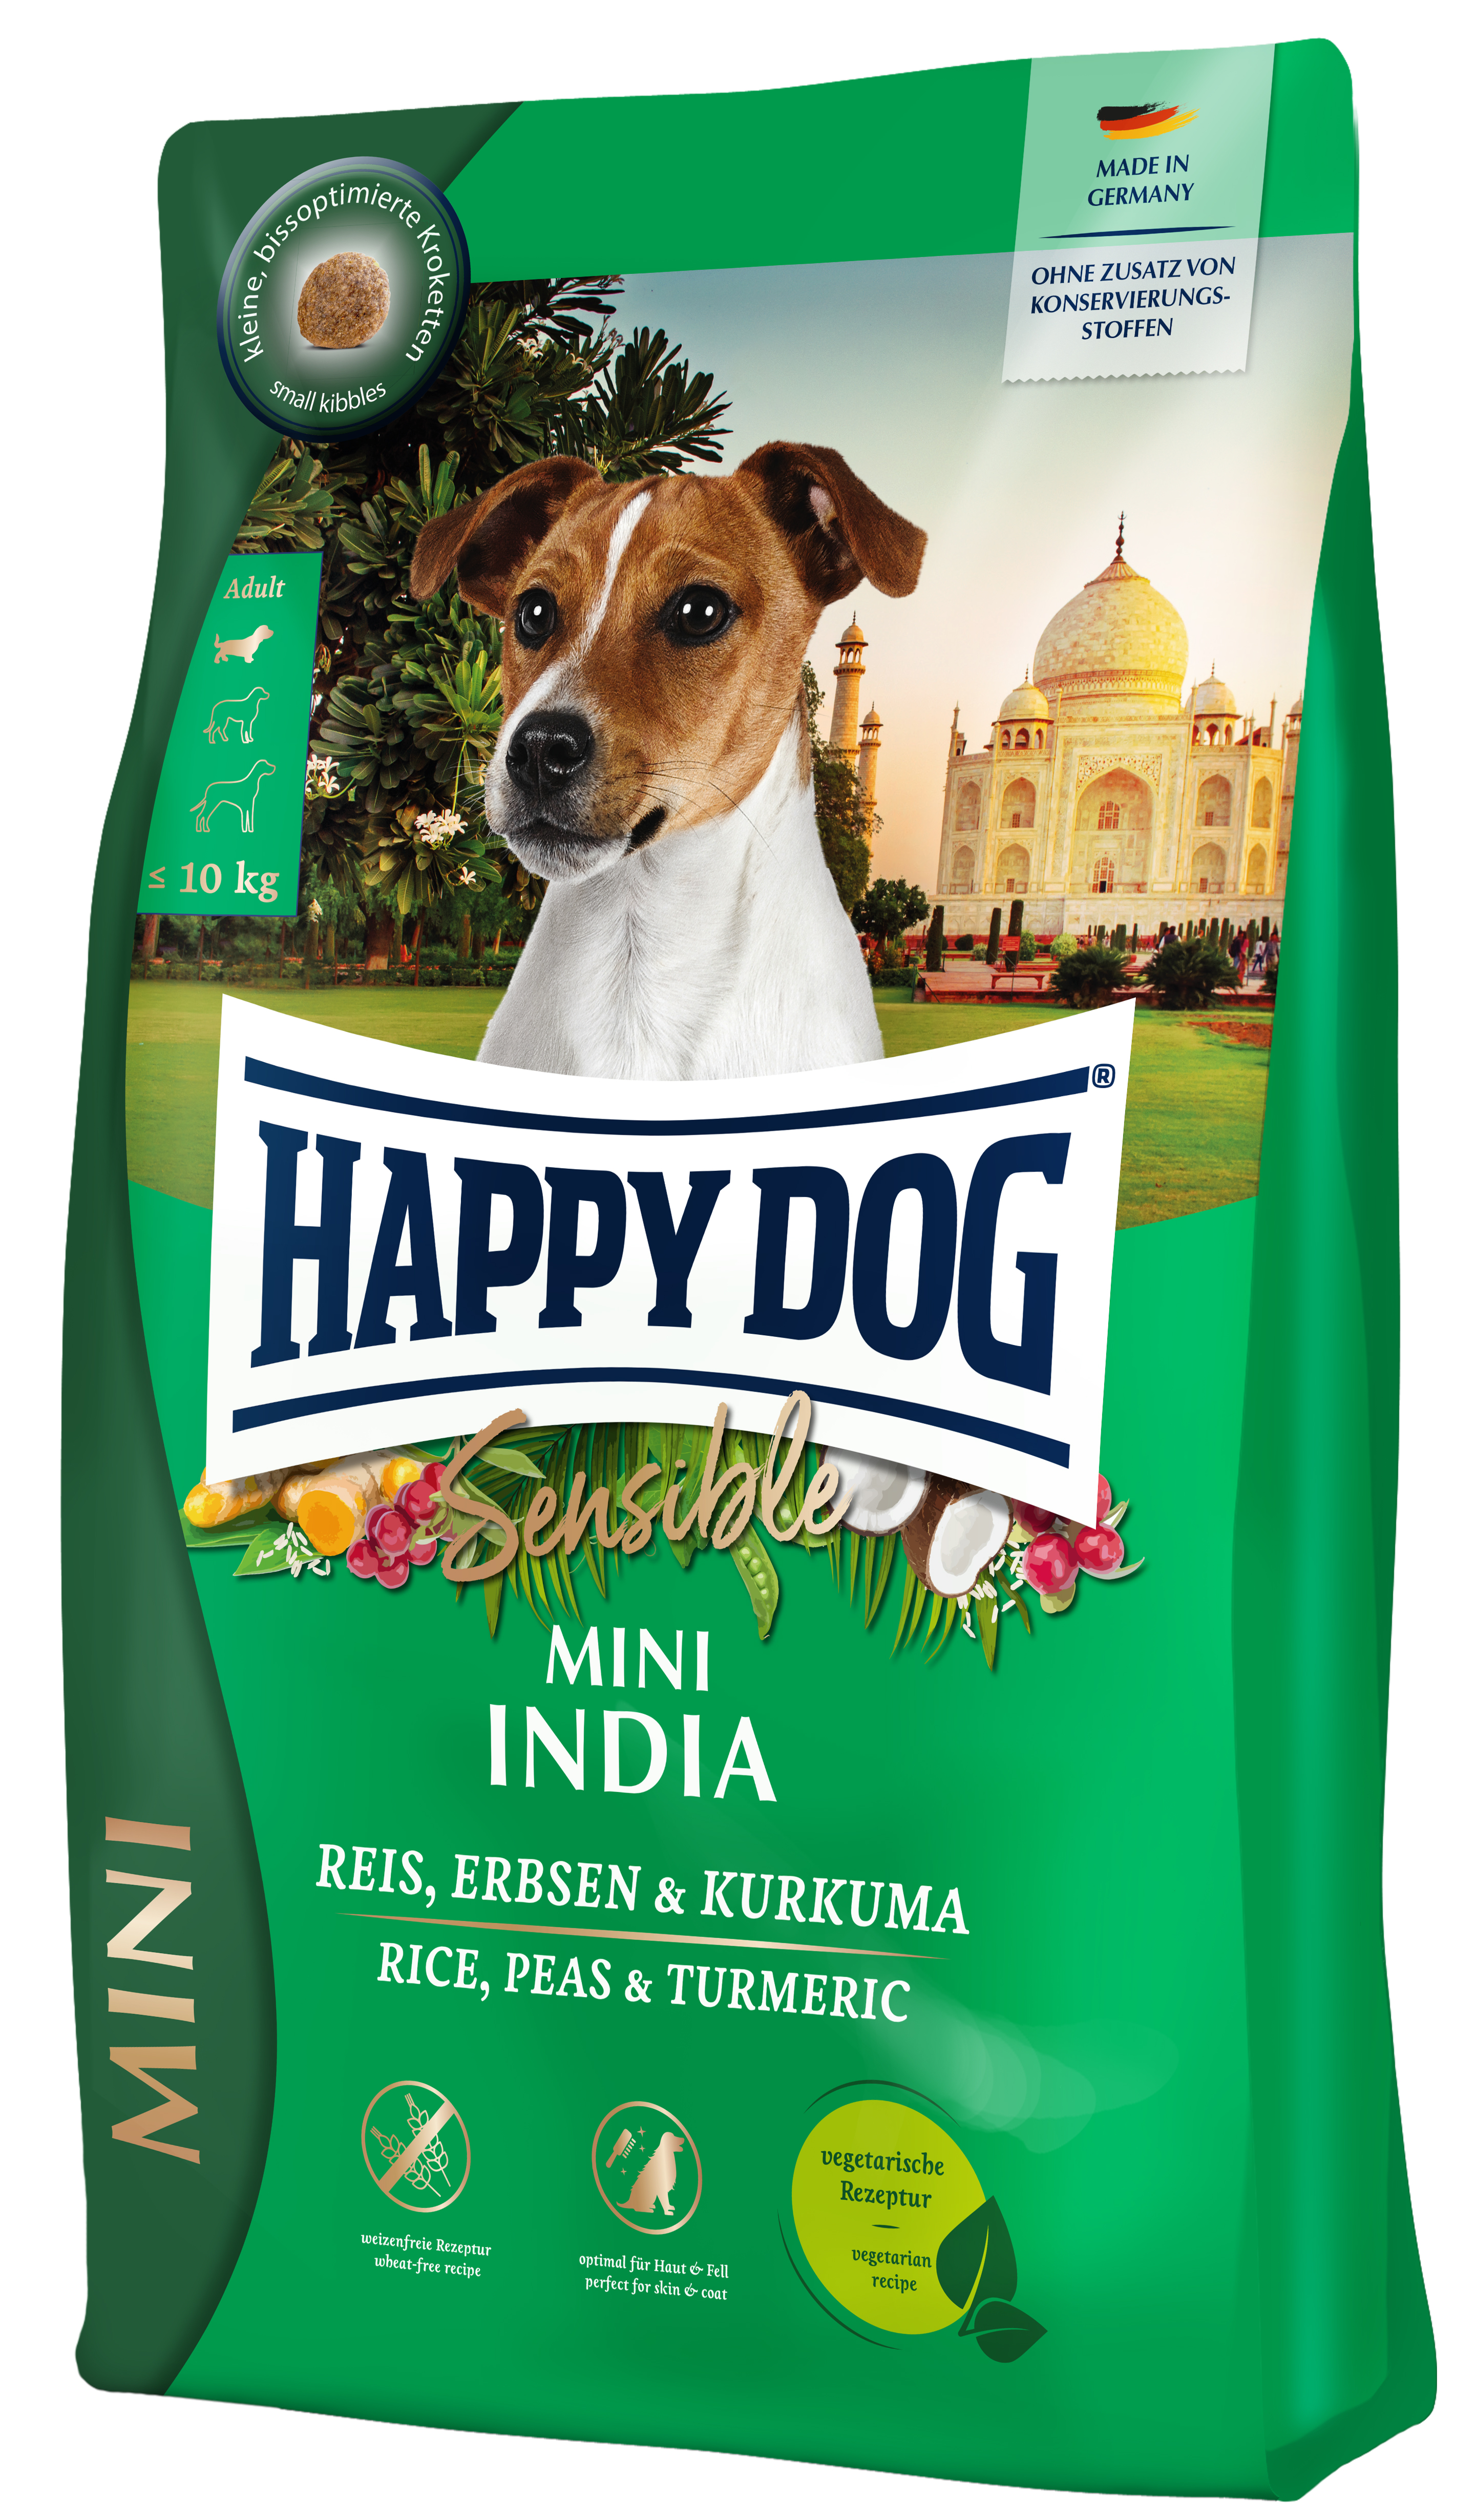 Happy Dog Sensible Mini India 800 g